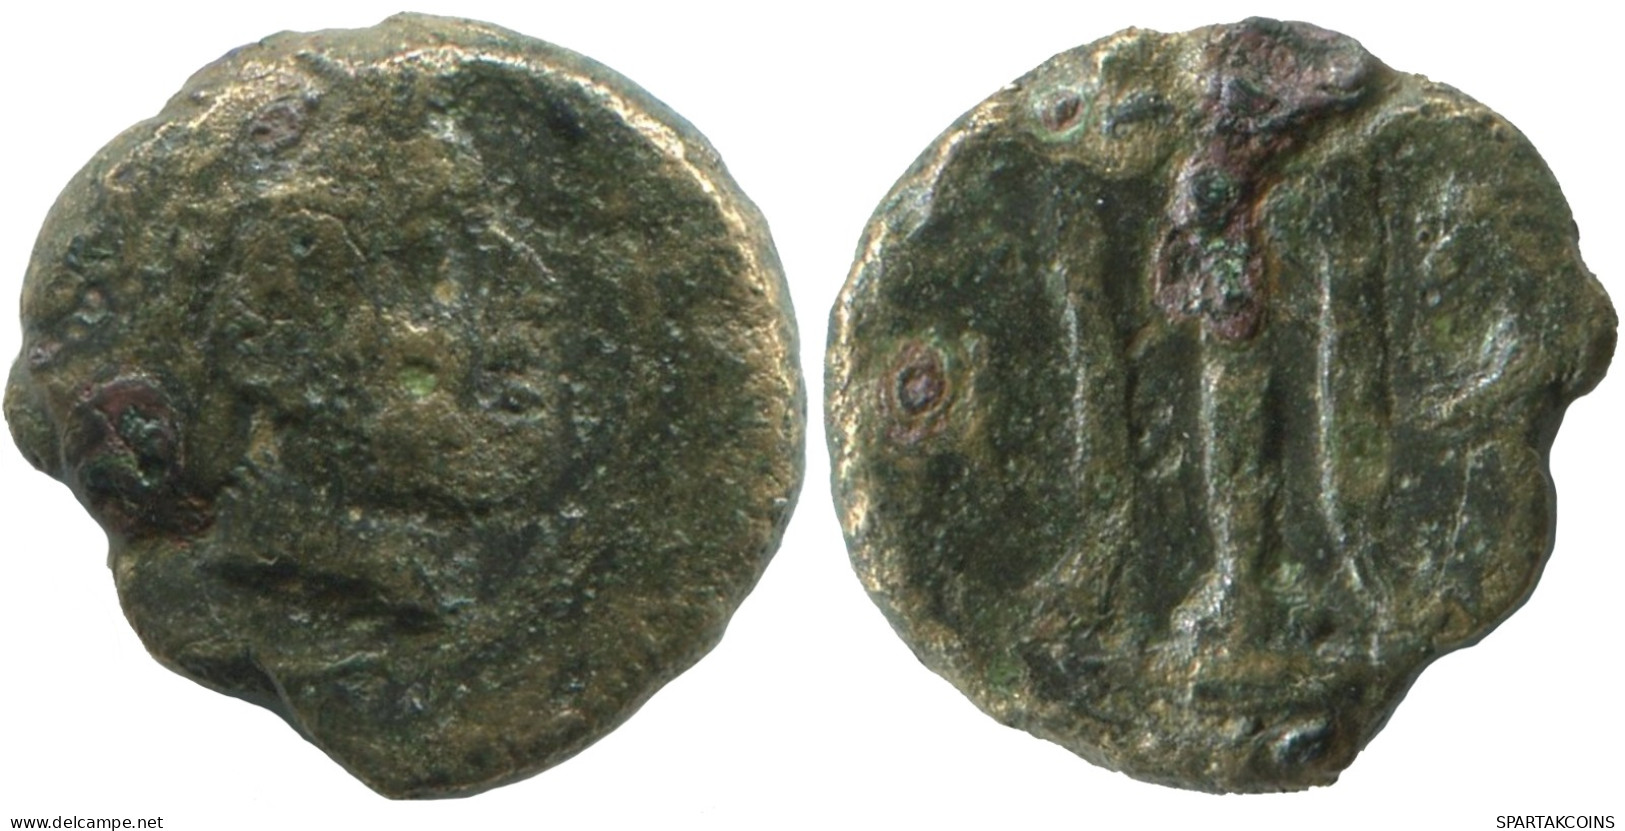 TRIPOD Antike Authentische Original GRIECHISCHE Münze 1g/11mm #SAV1425.11.D.A - Griechische Münzen